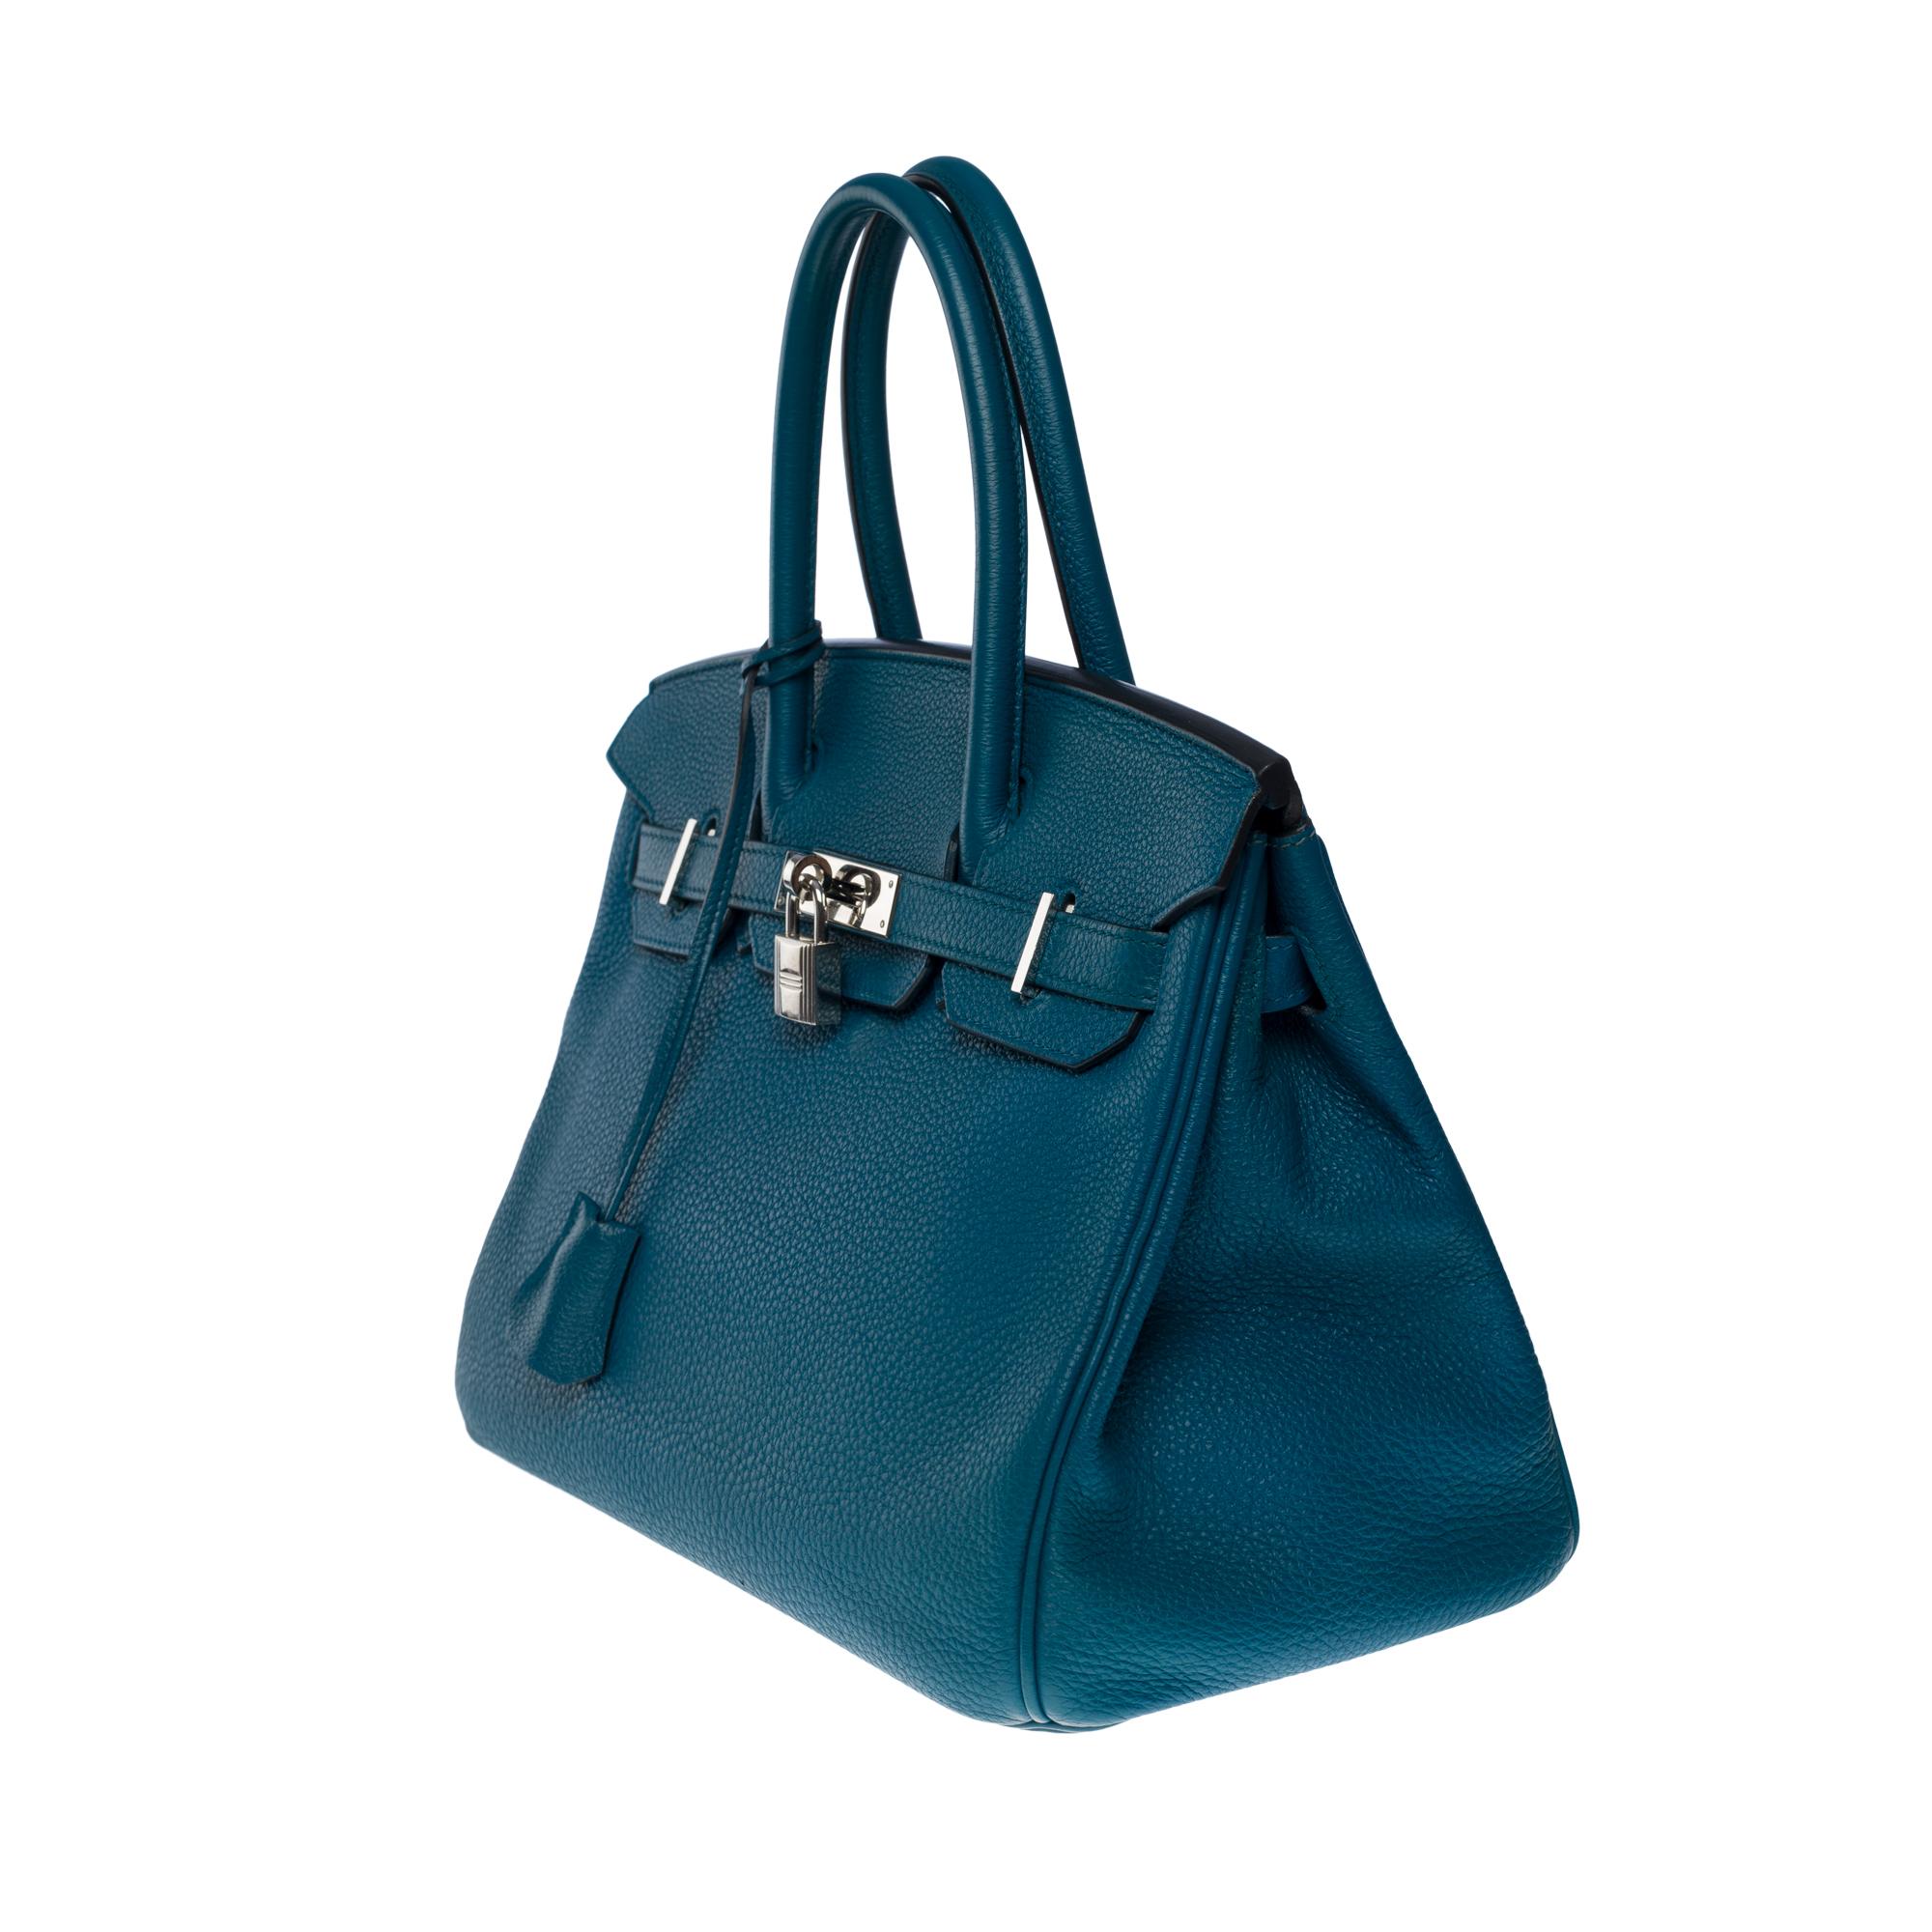 Women's Amazing Hermès Birkin 30 handbag in Blue Colvert Togo leather, SHW